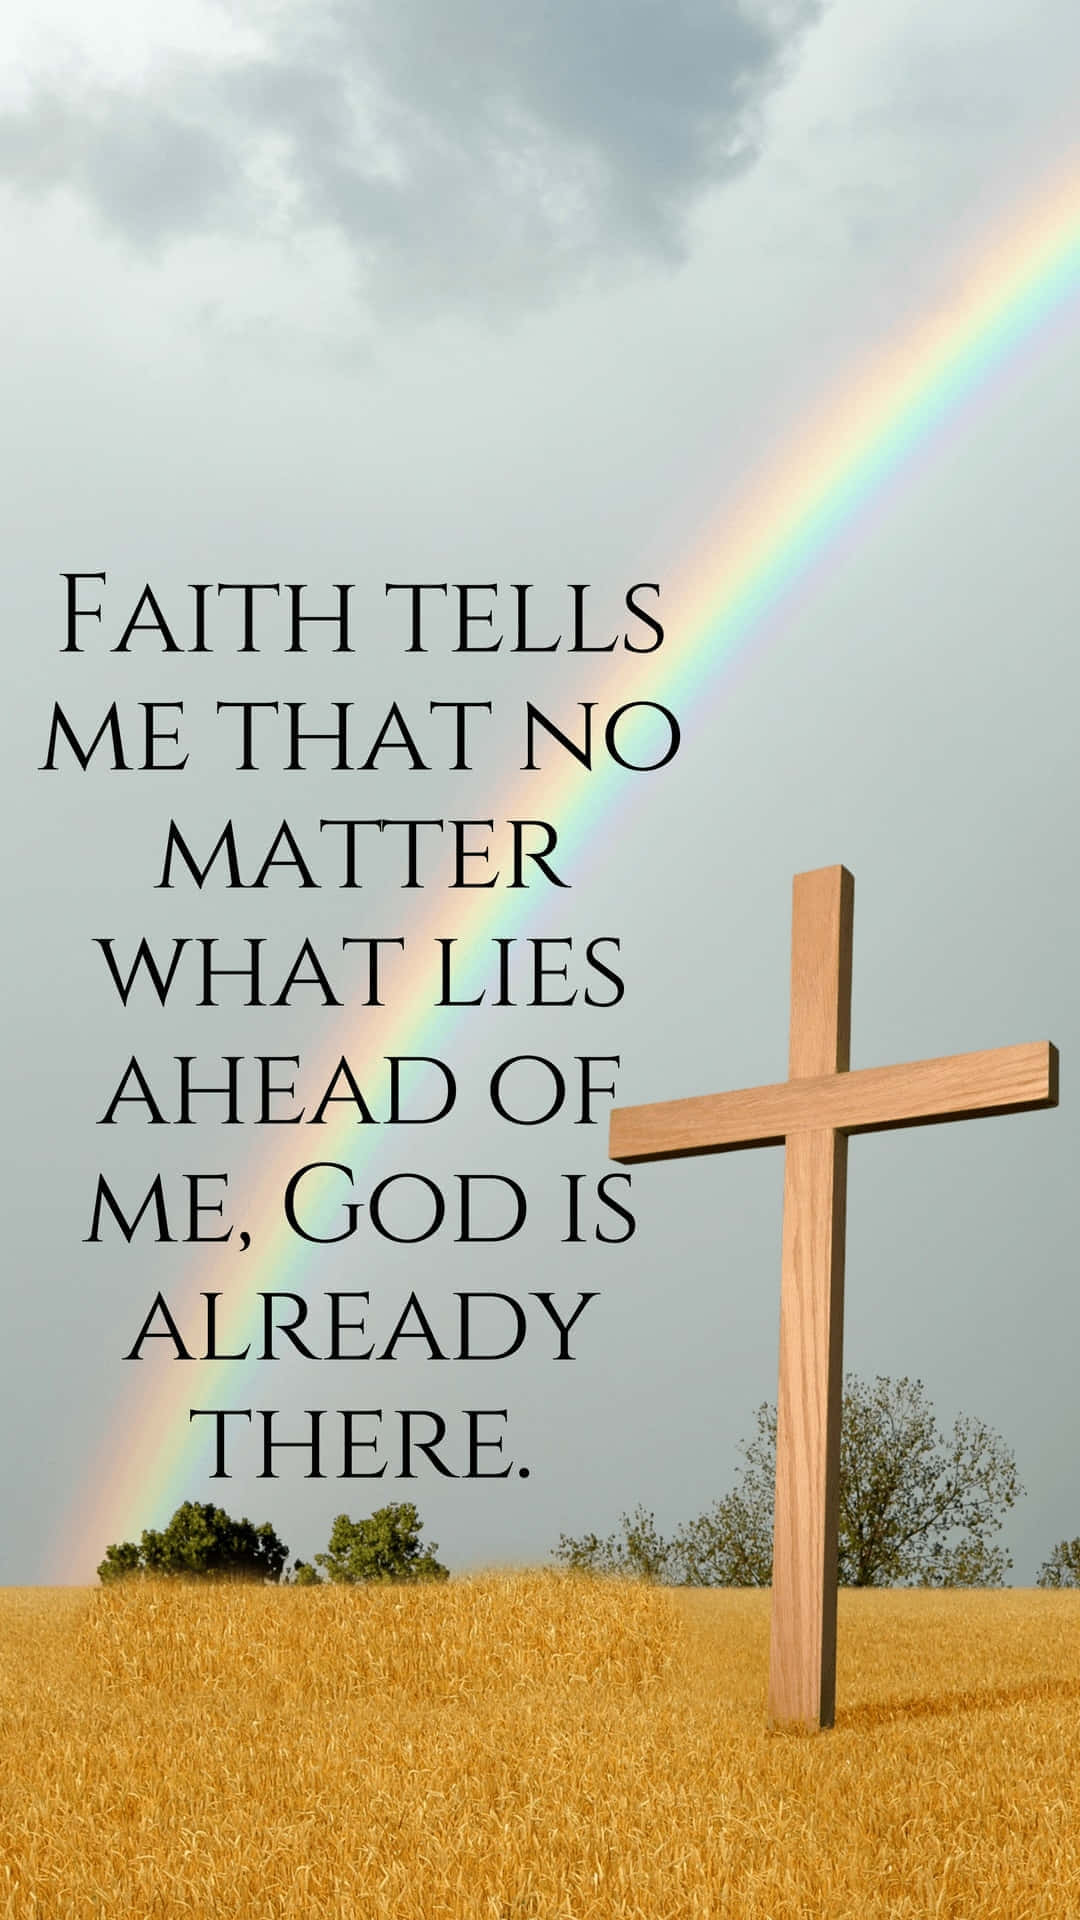 Faithand God Ahead Rainbow Cross Wallpaper